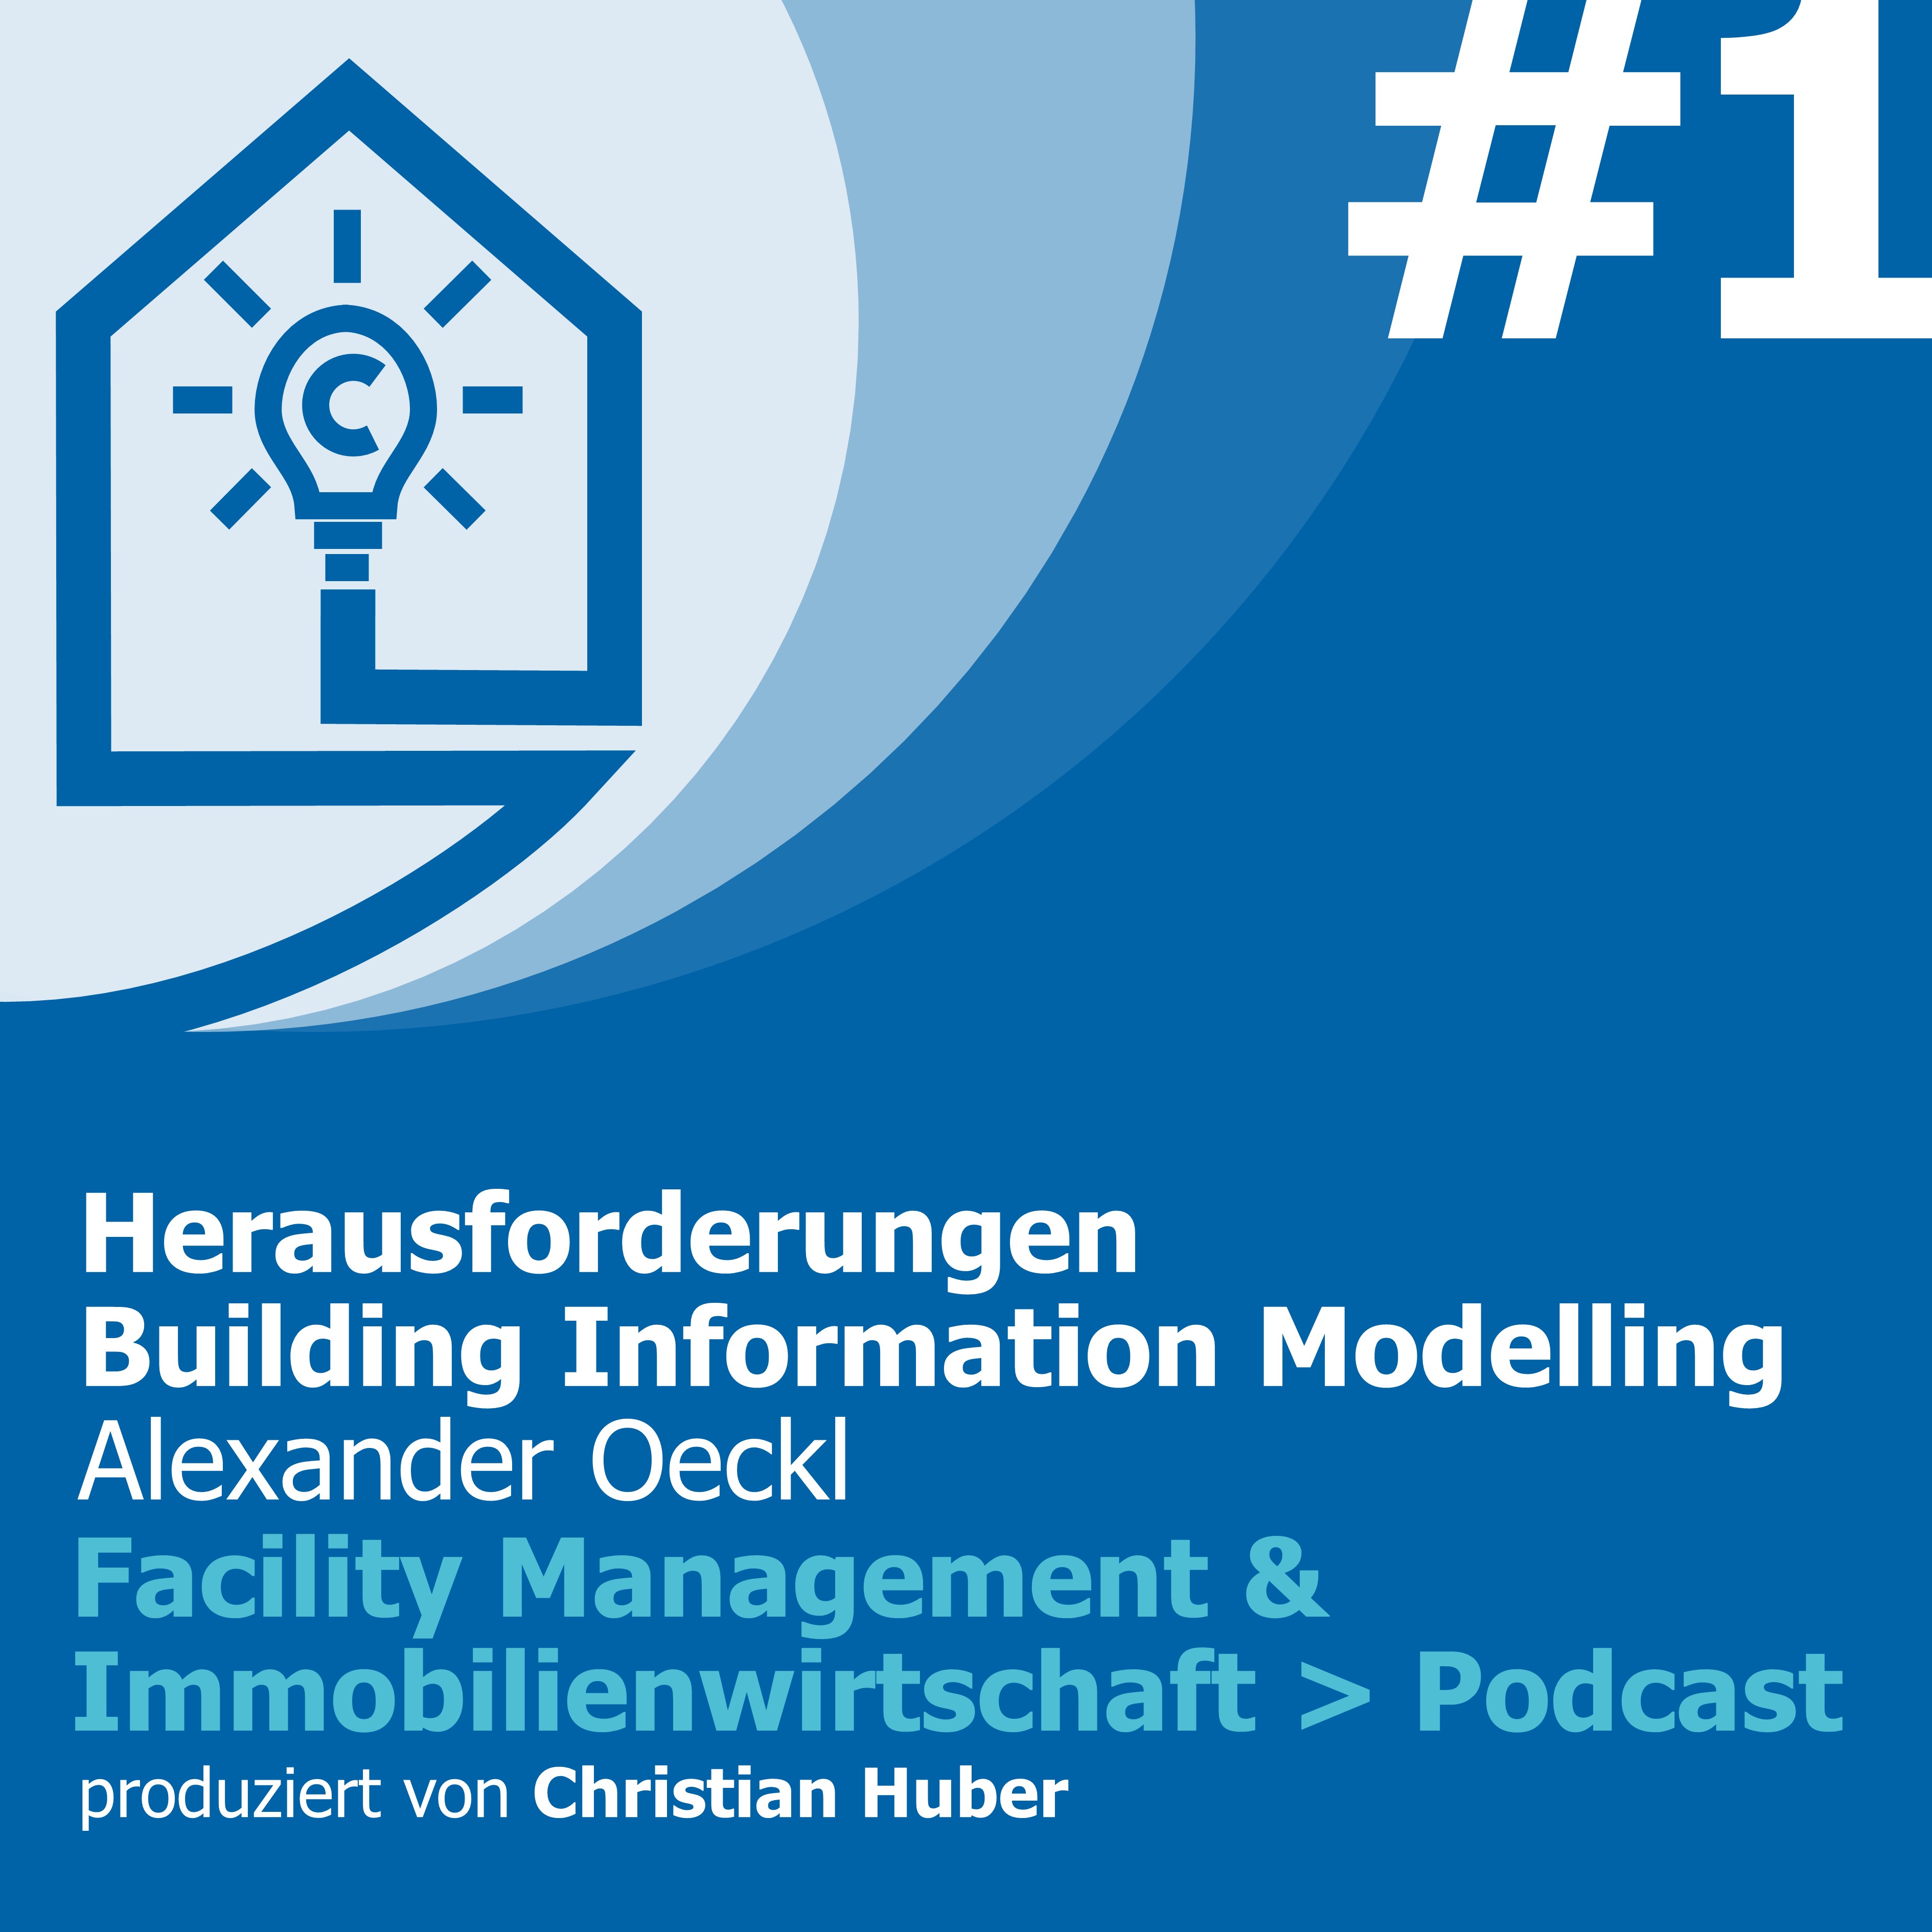 Episode 1 - Herausforderungen Building Information Modeling (BIM). Christian Huber im Gespräch mit Alexander Oeckl